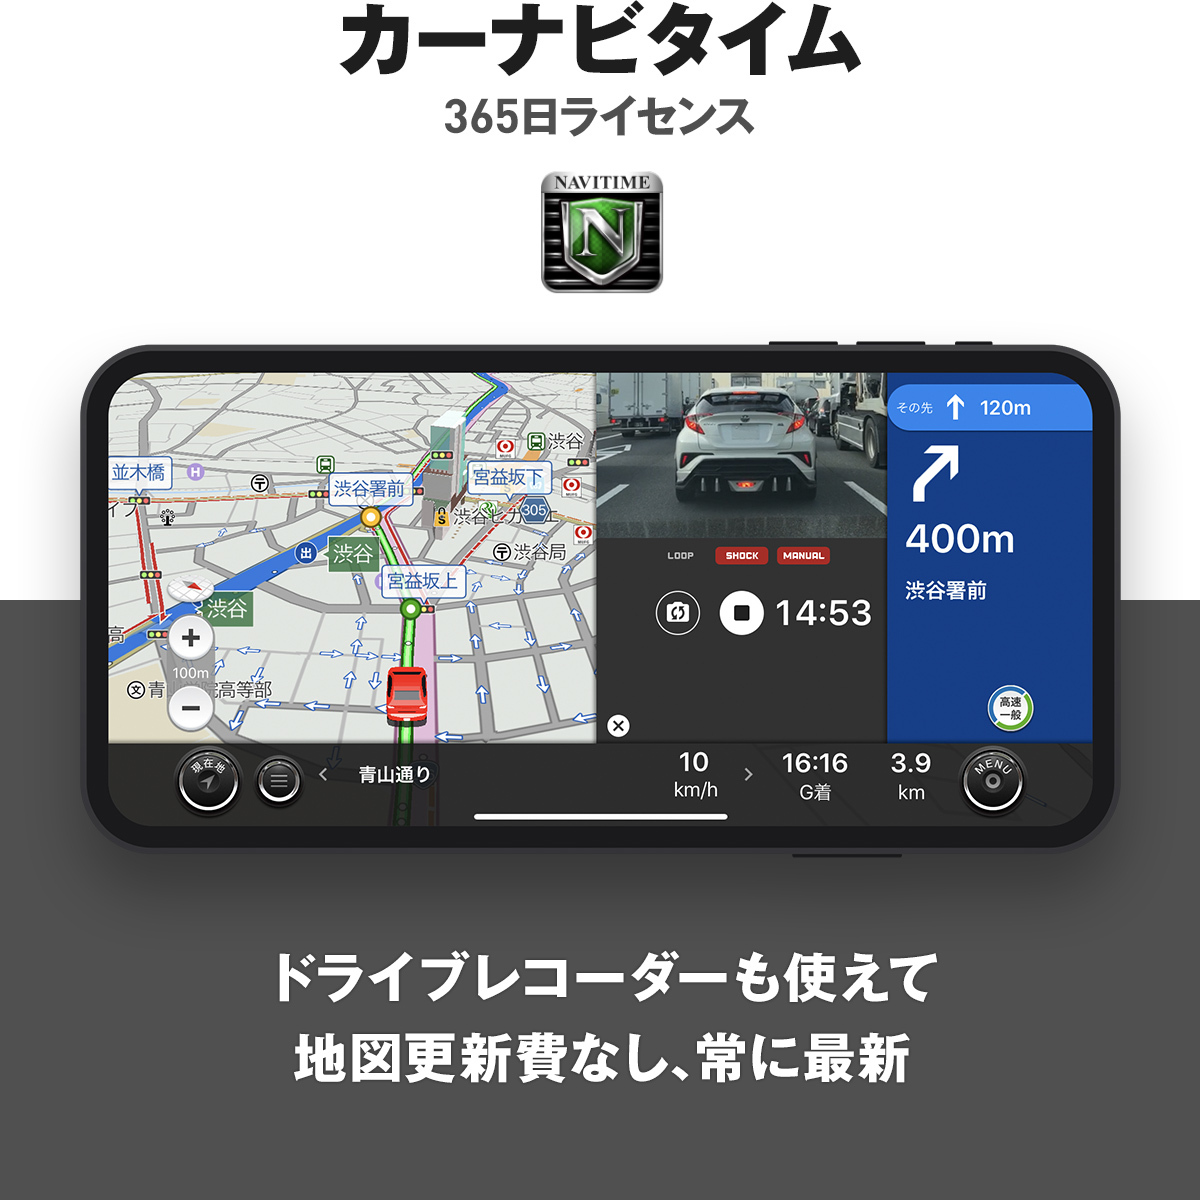 地図自動更新の最新カーナビ スマホカーナビだからできる優良価格 ドラレコ一体型カーナビ カーナビタイム365日ライセンス NAVITIME ナビタイム ポータブルナビ Android端末 iPhone iPad タブレット対応 地図 最新 地図更新無料 Autoにも対応 ドライブレコーダー 自動更新 オフラインで利用できる Apple VICS渋滞情報対応 公式ストア CarPlay Android 受注生産品